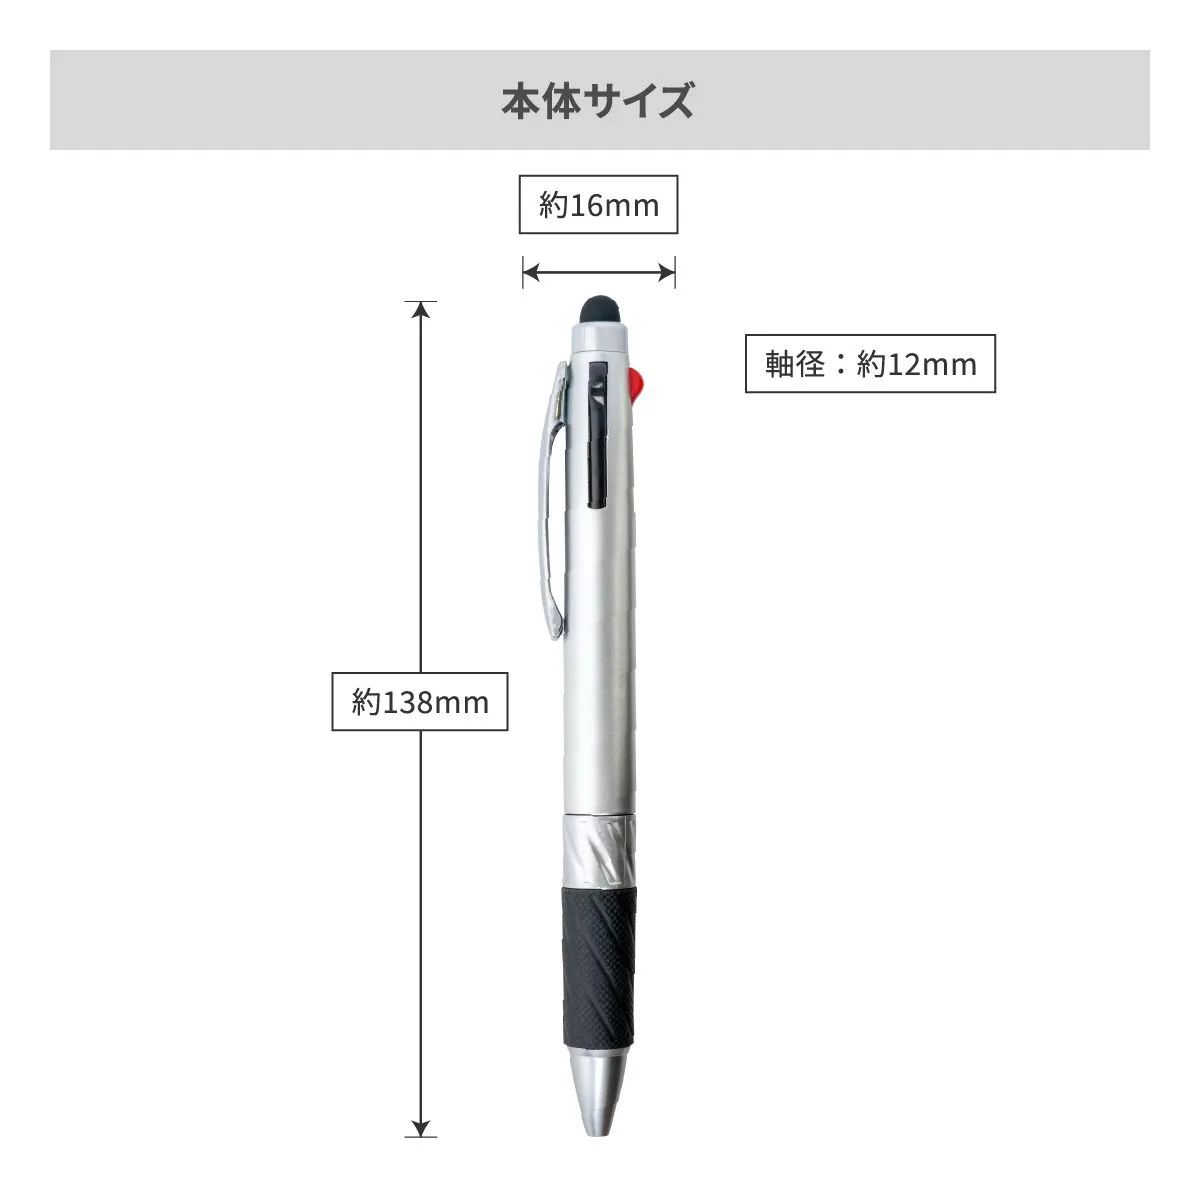 タッチペン付3色ボールペン【多機能ペン / パッド印刷】 画像6